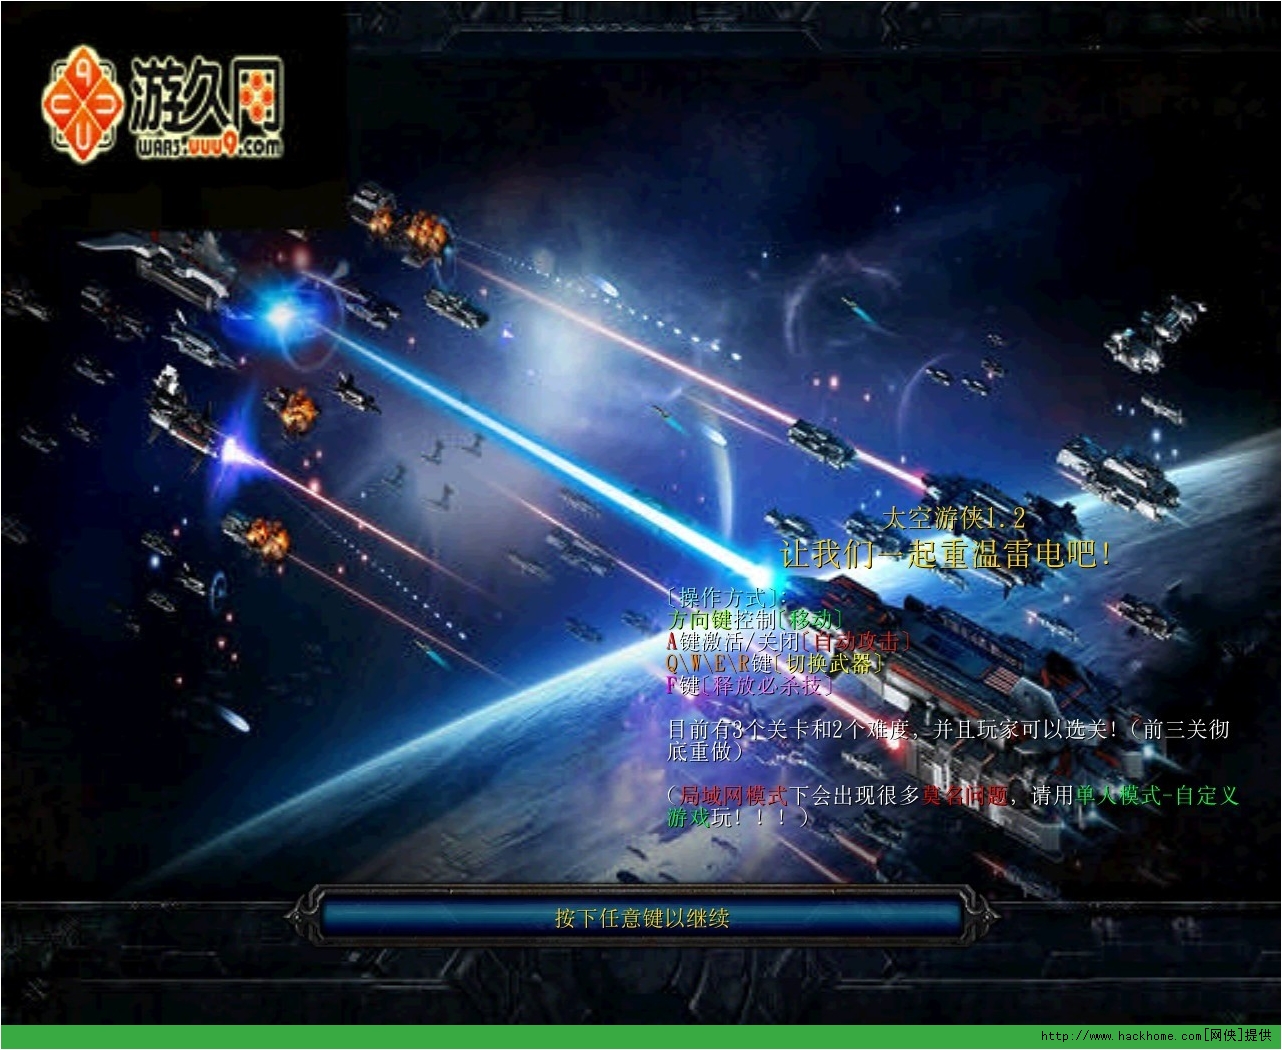 0《太空游侠》是一张向经典街机游戏雷电致敬的地图,玩家操纵战机射击